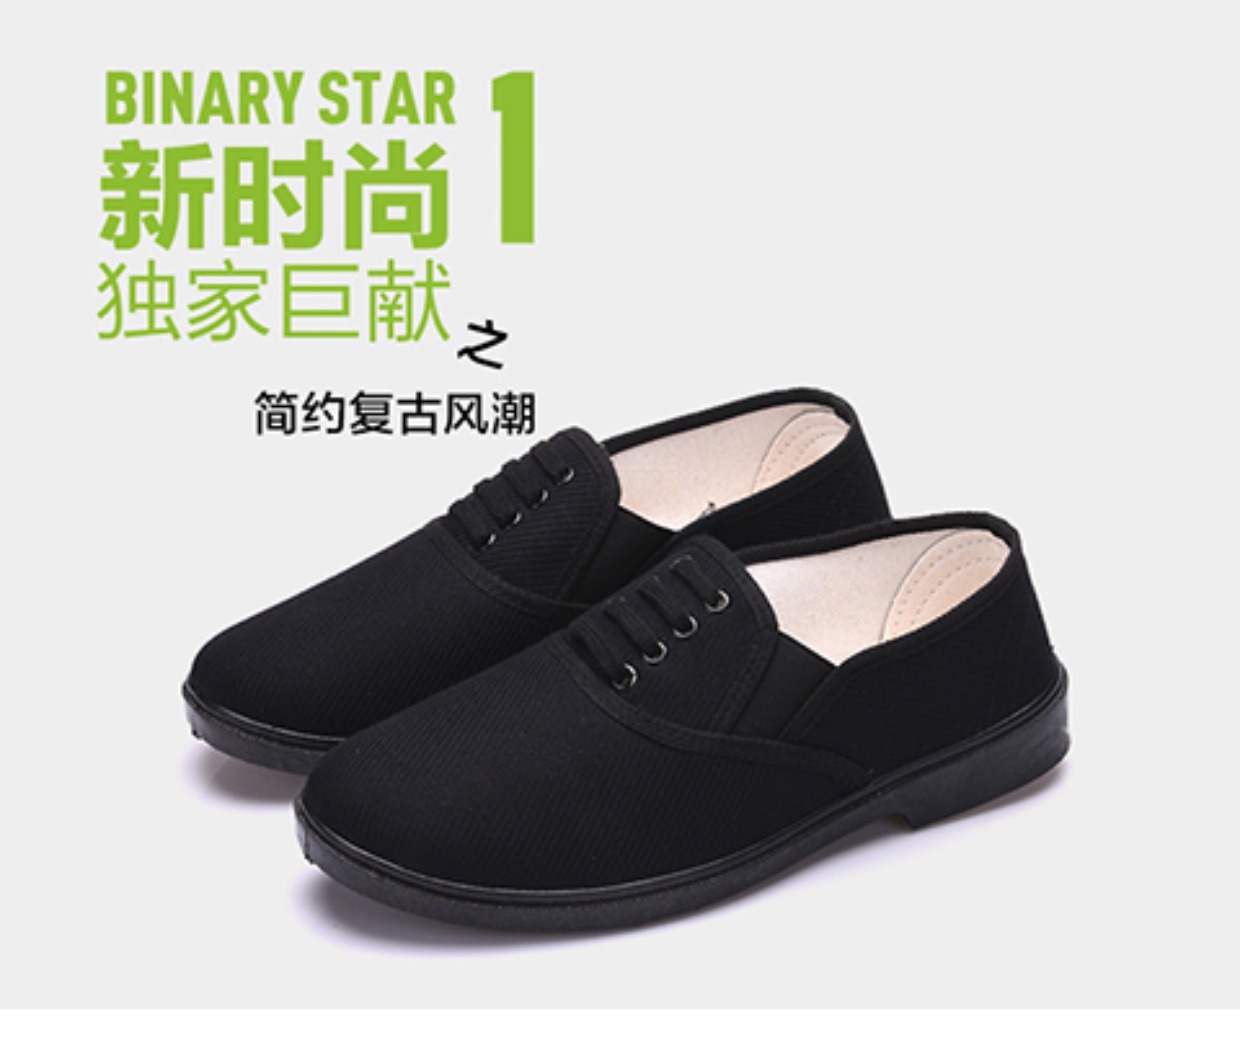 Chính hãng Jihua 3517 thương hiệu 87 giày Nga giày thường bảo hiểm lao động đen lái xe làm việc hoang dã người đàn ông giày vải